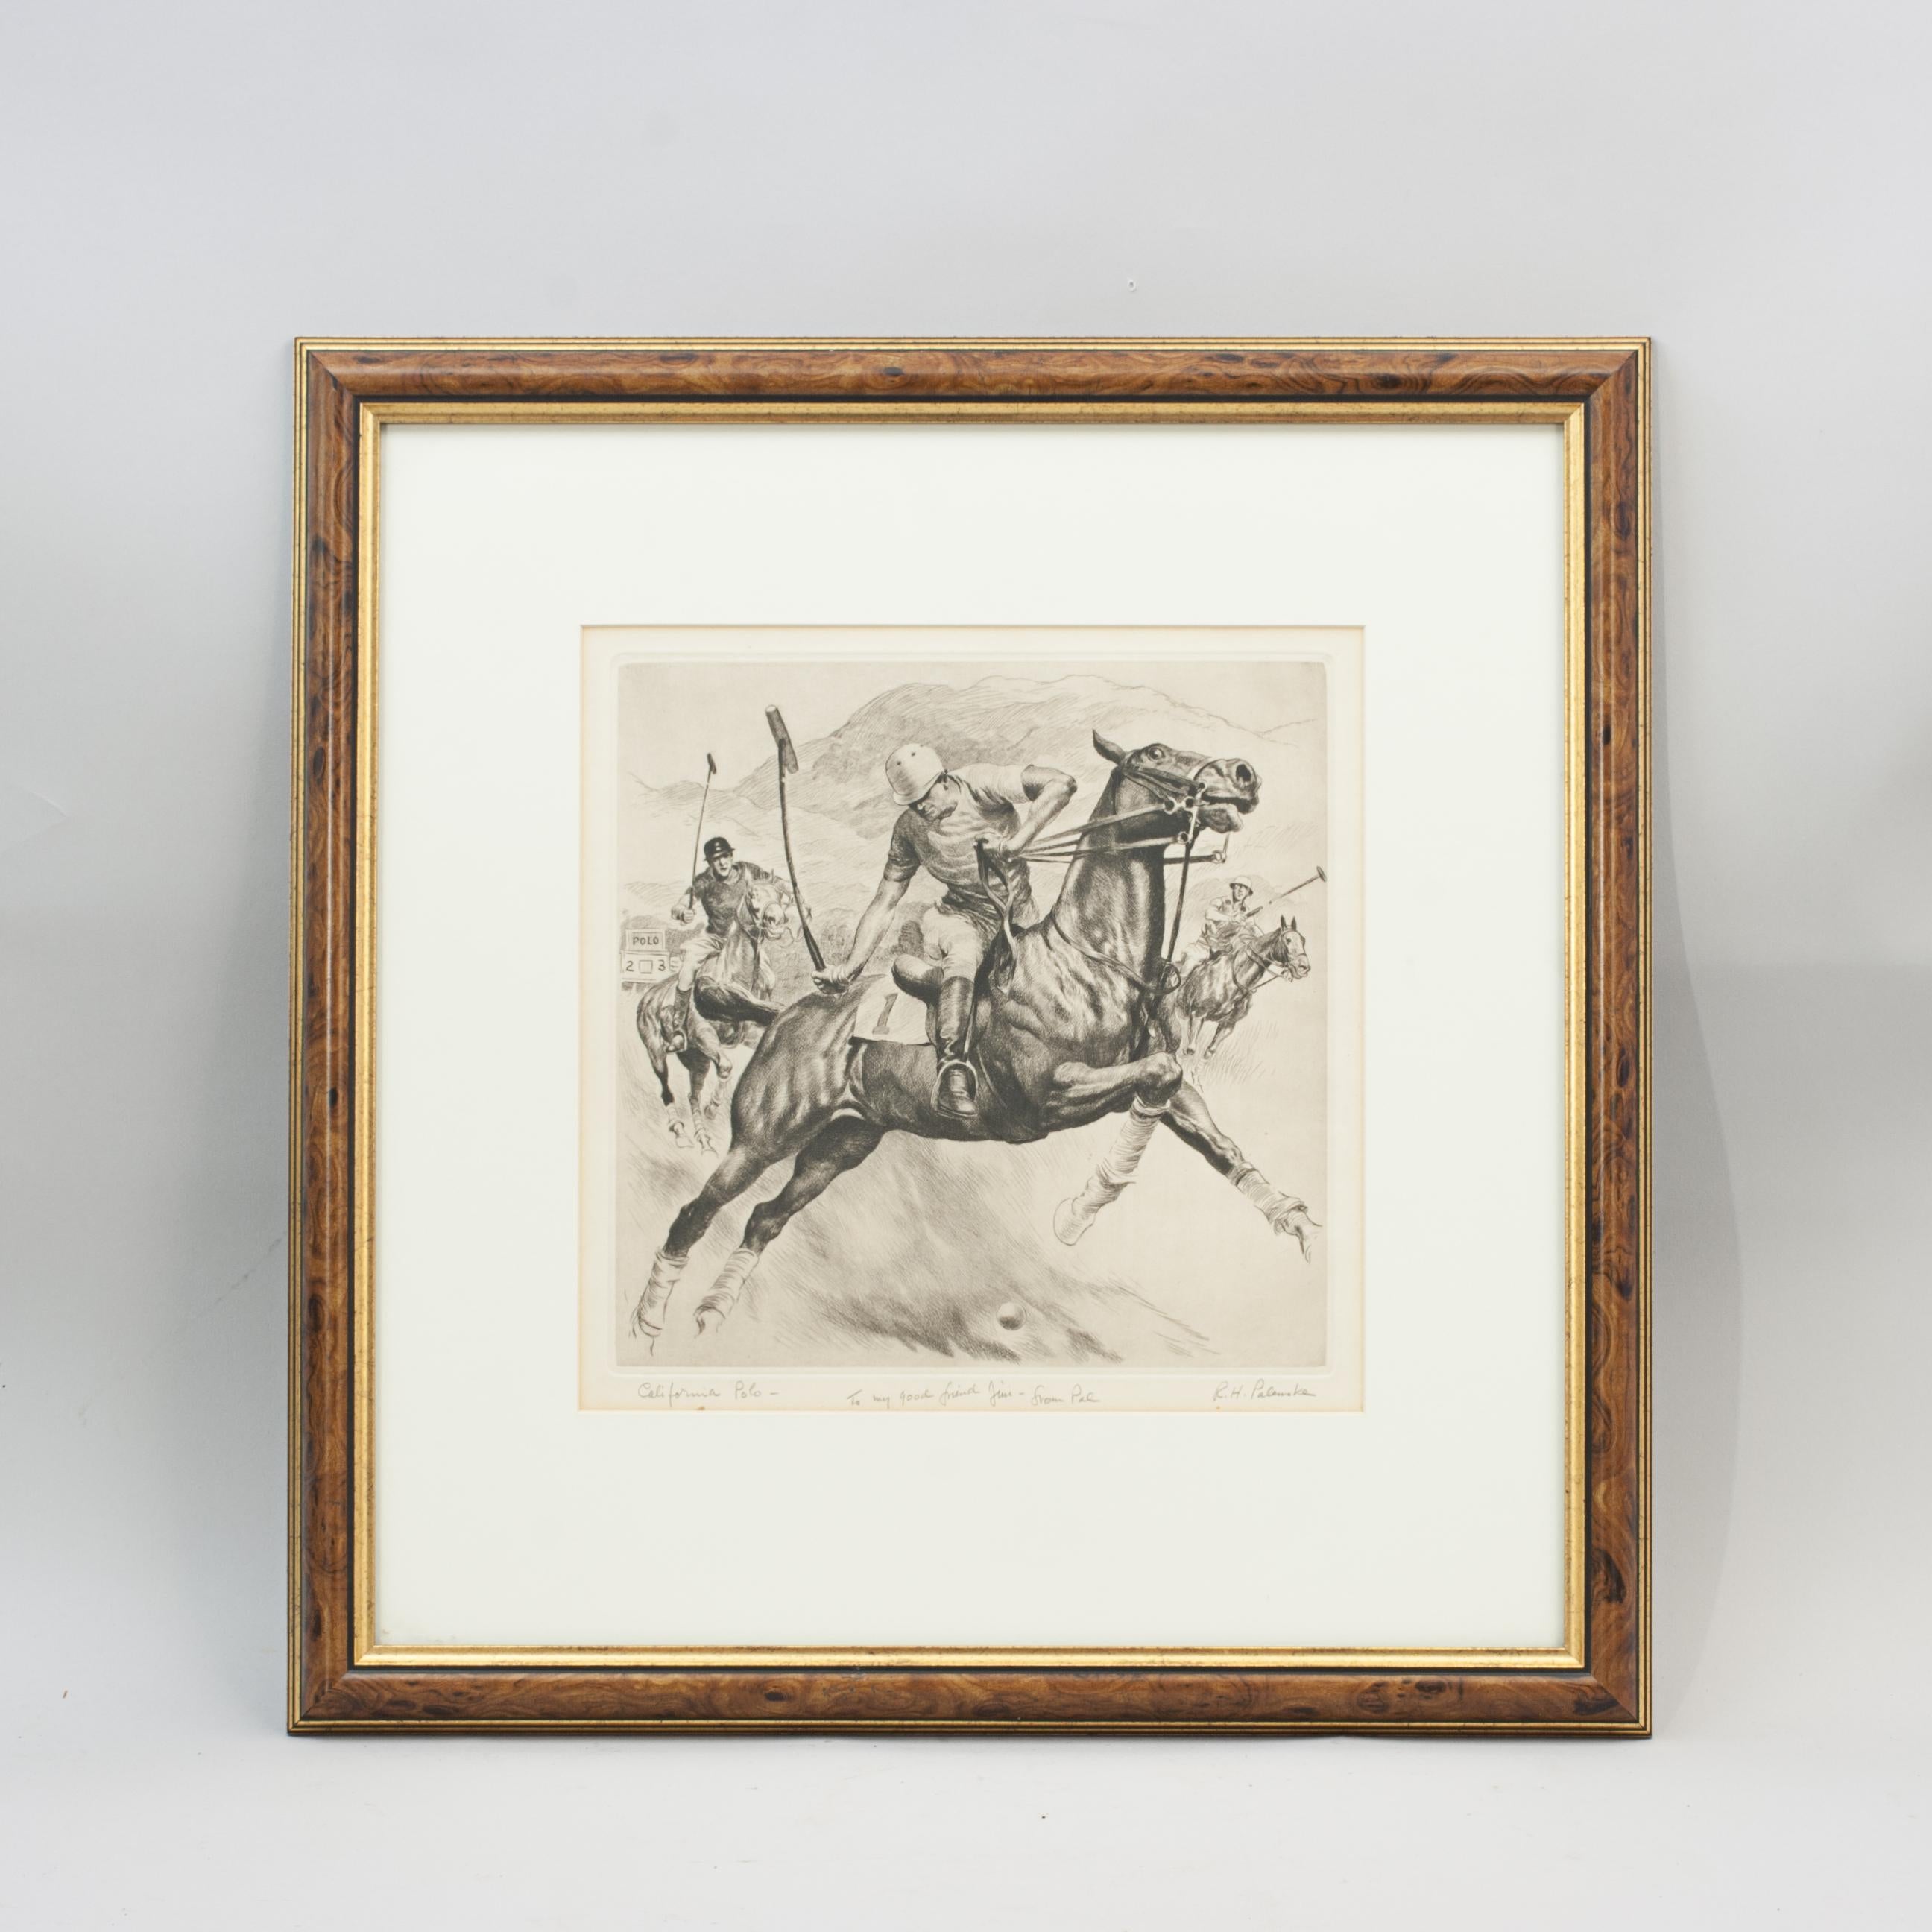 Polo de Californie Gravure.
Magnifique gravure à la pointe sèche de Polo en Amérique par l'artiste américain Reinhold H. Palenske (1884-1953). Inscrit et signé par l'artiste 